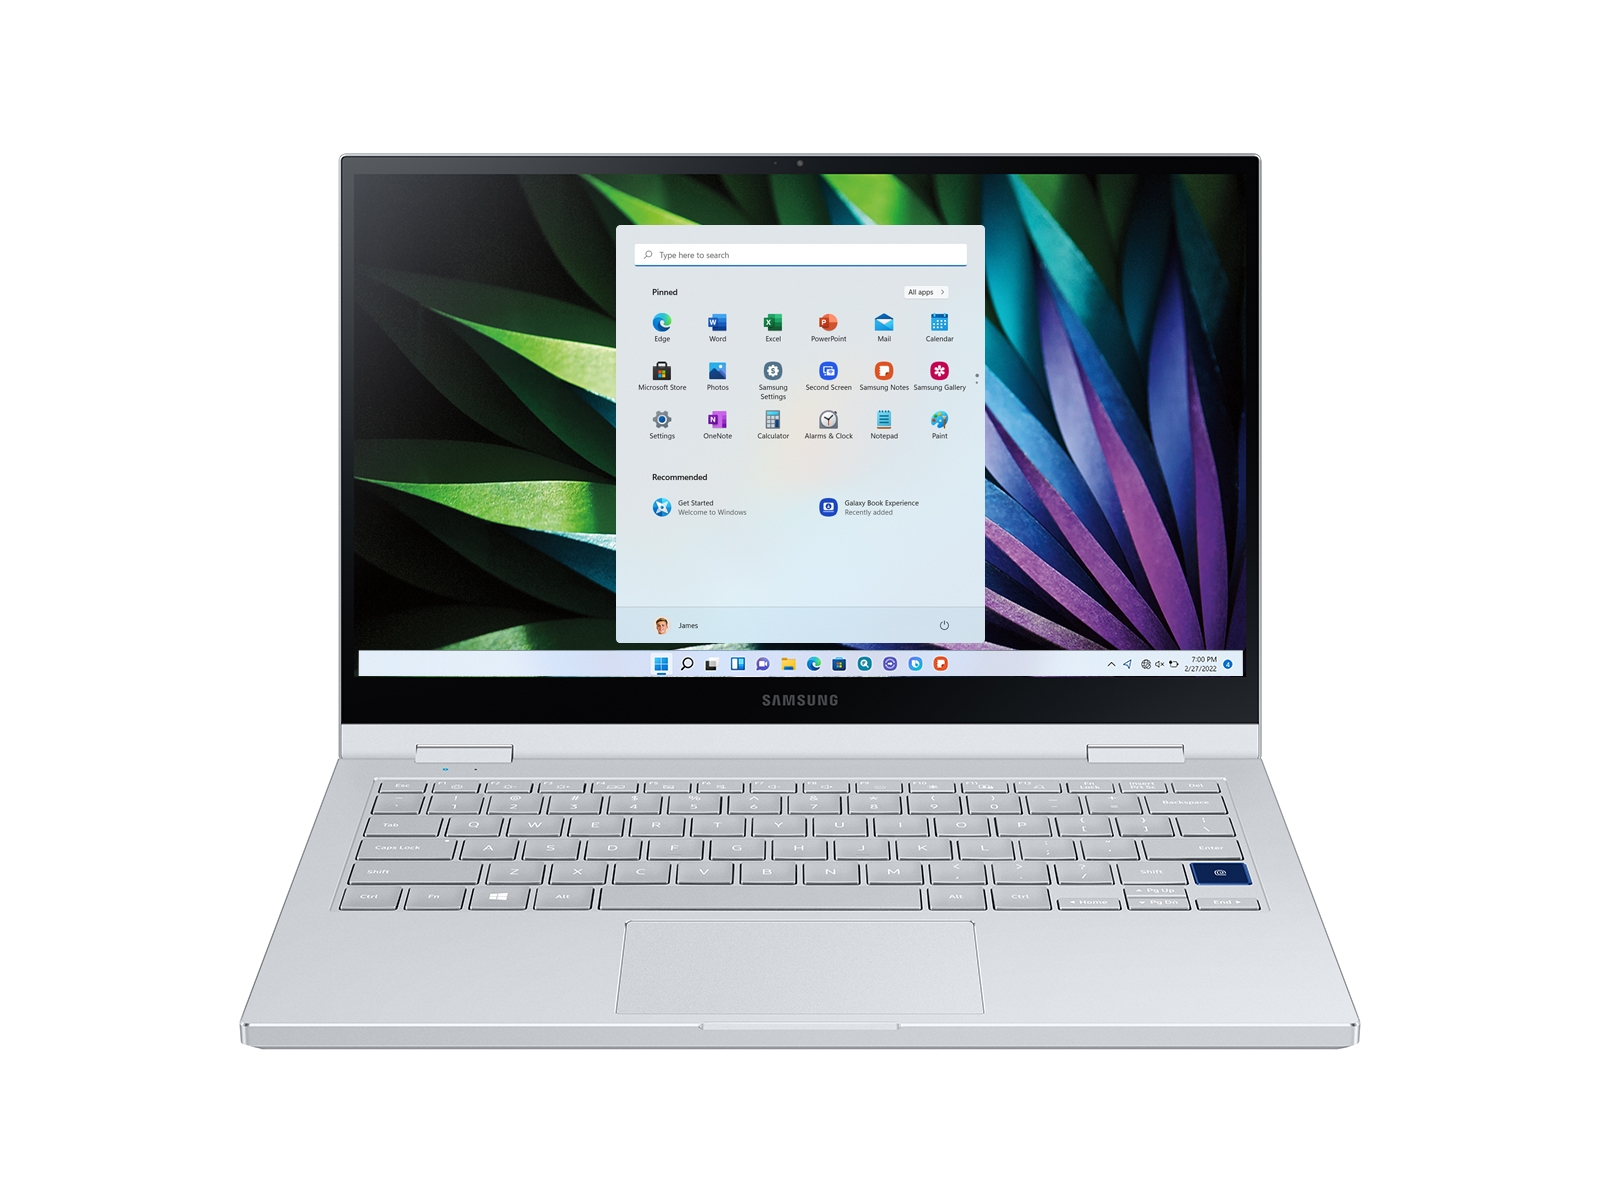 Acer Chromebook Spin 511 - Với màn hình cảm ứng 11.6 inch và bộ vi xử lý Intel Celeron N4120, Acer Chromebook Spin 511 là một sự lựa chọn tuyệt vời cho những ai cần một máy tính nhỏ gọn và thông minh. Xem hình ảnh để đánh giá chính xác hơn nhé.